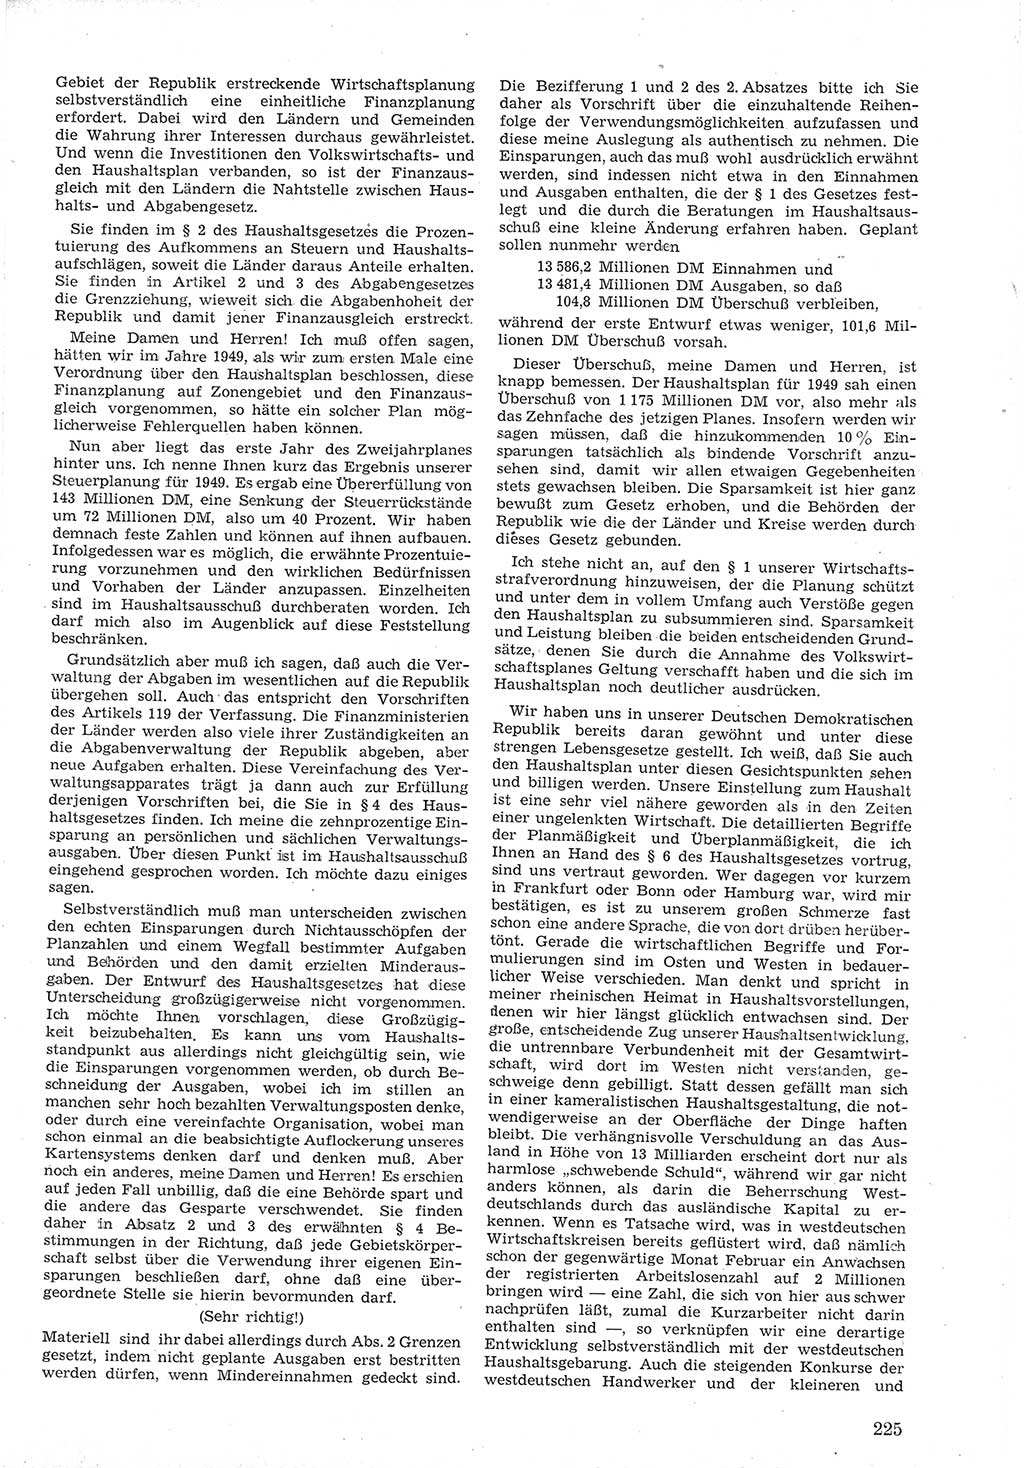 Provisorische Volkskammer (VK) der Deutschen Demokratischen Republik (DDR) 1949-1950, Dokument 239 (Prov. VK DDR 1949-1950, Dok. 239)